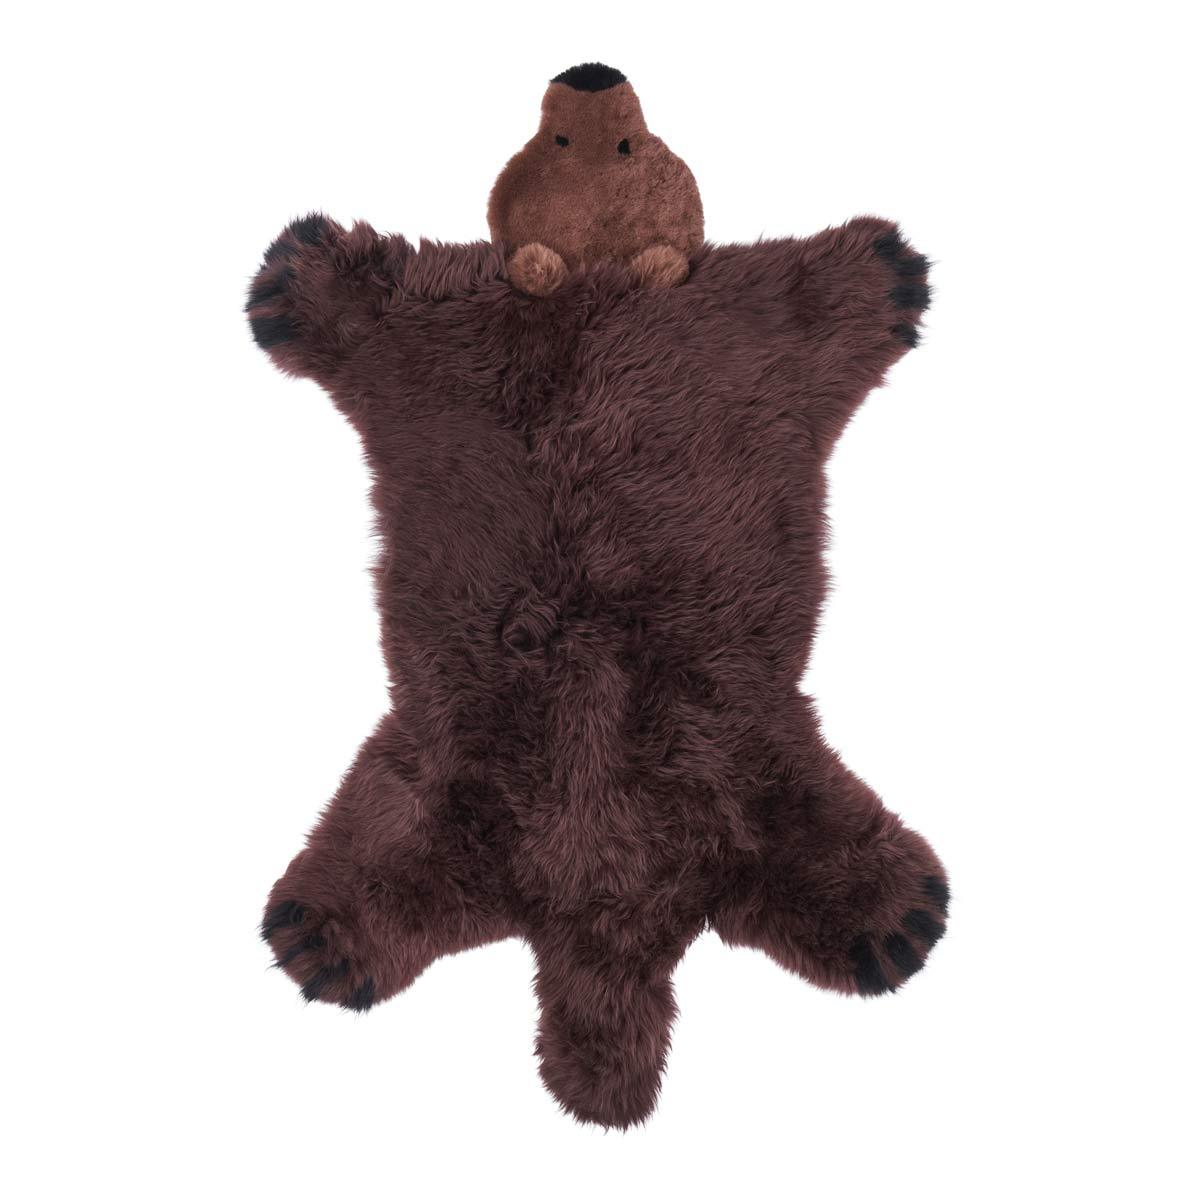 Bear | New Zealand Sheepskin | 130x80 cm. - Naturescollection.eu